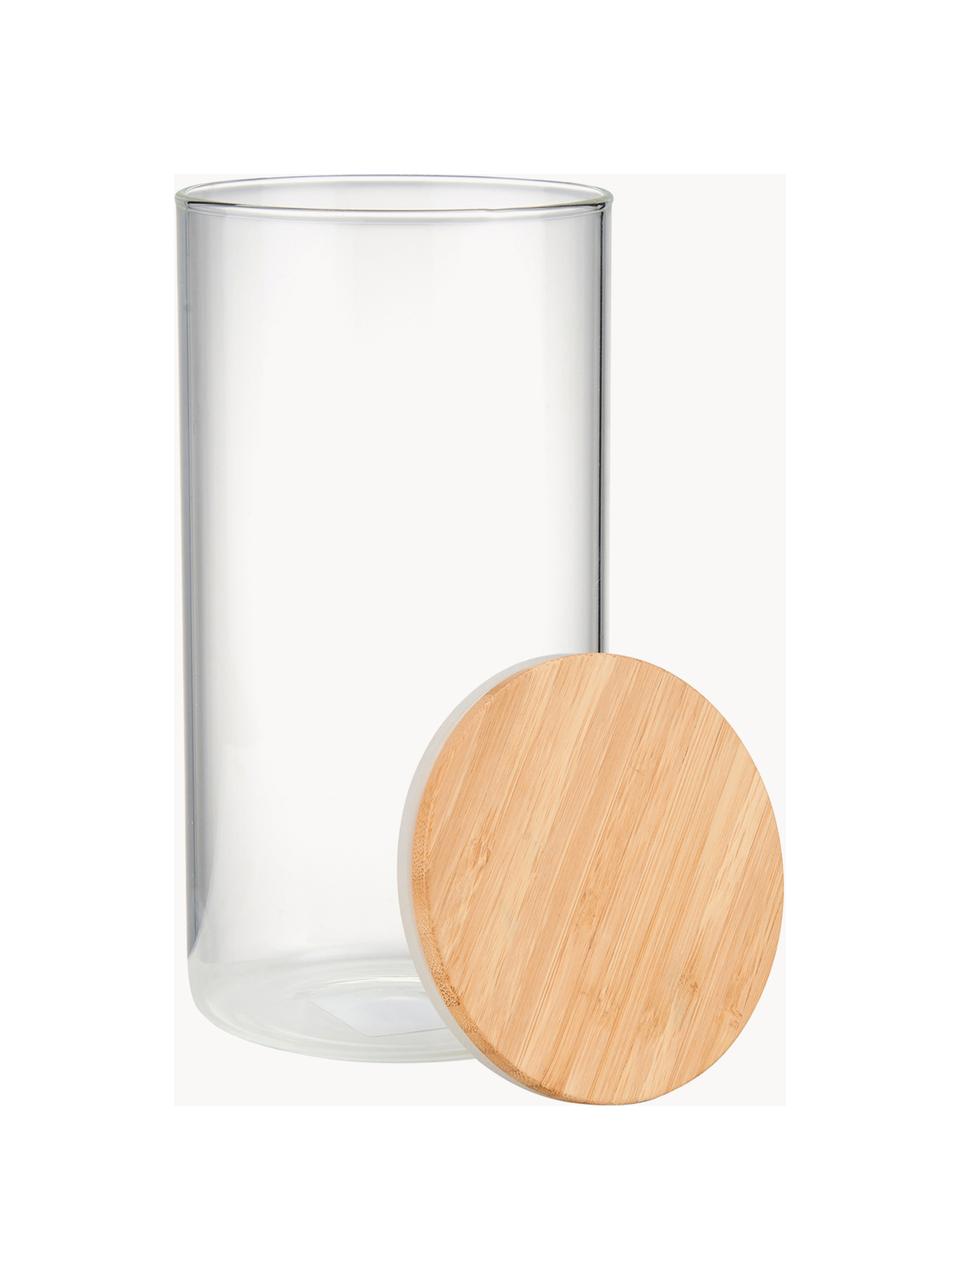 Contenitore con coperchio in legno di faggio Woodlock, Contenitore: vetro, Coperchio: legno di faggio, Trasparente, legno chiaro, Ø 11 x Alt. 28 cm, 2.3 L